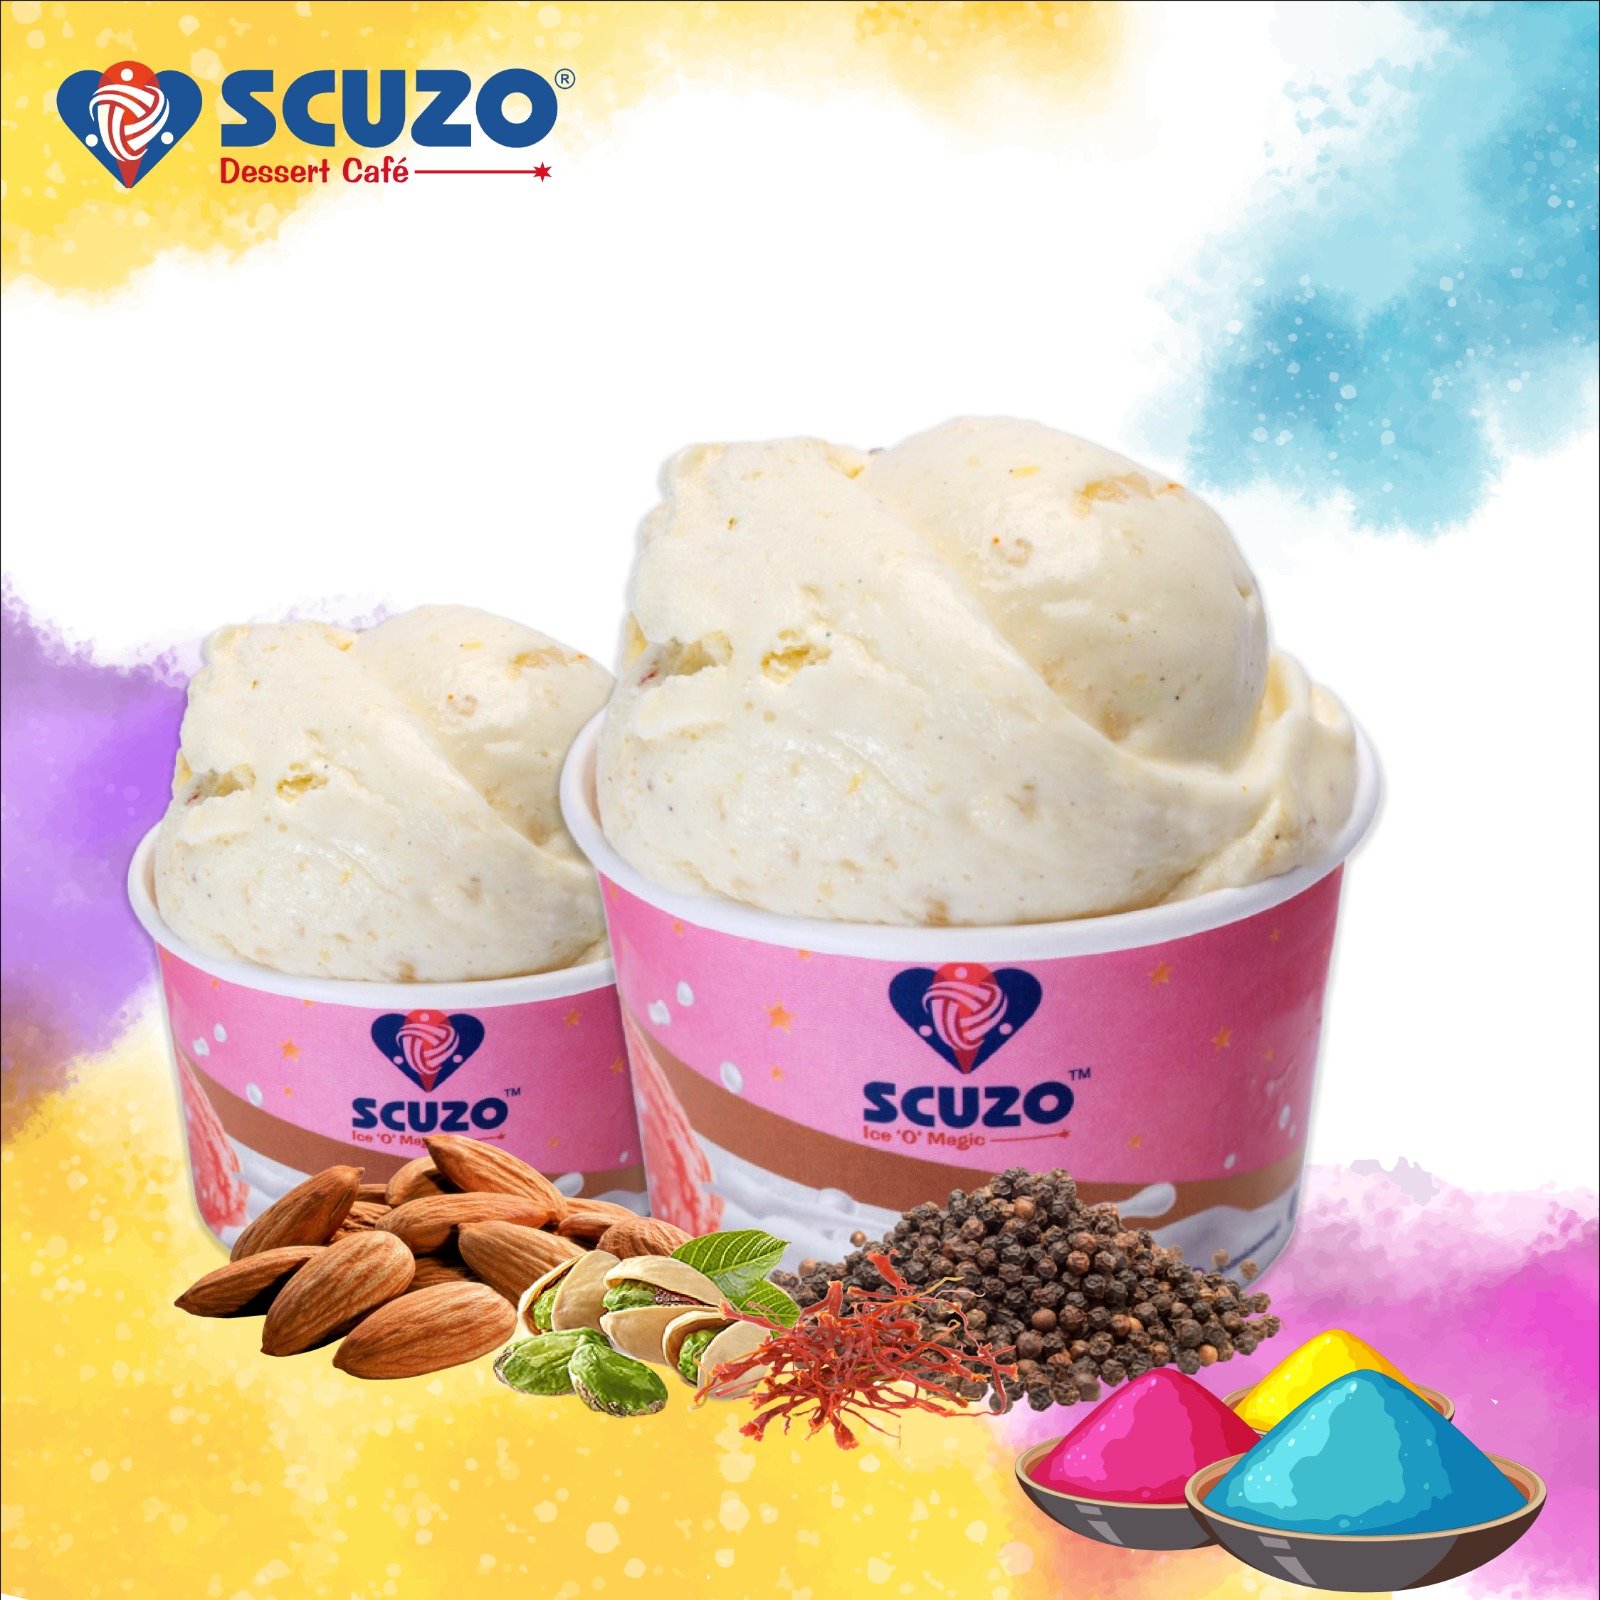 Scuzo Ice ‘O’ Magic introduces thandai gelato